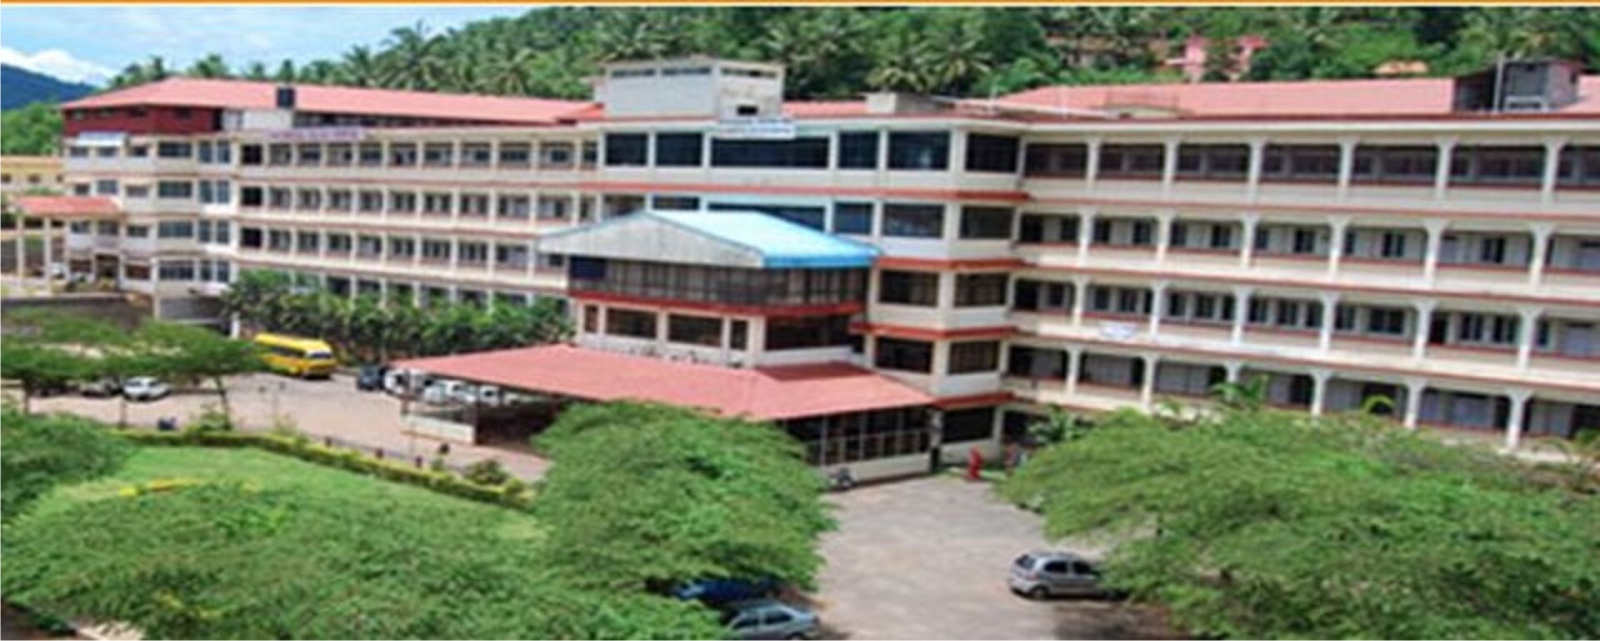 K V G Medical College & Hospital